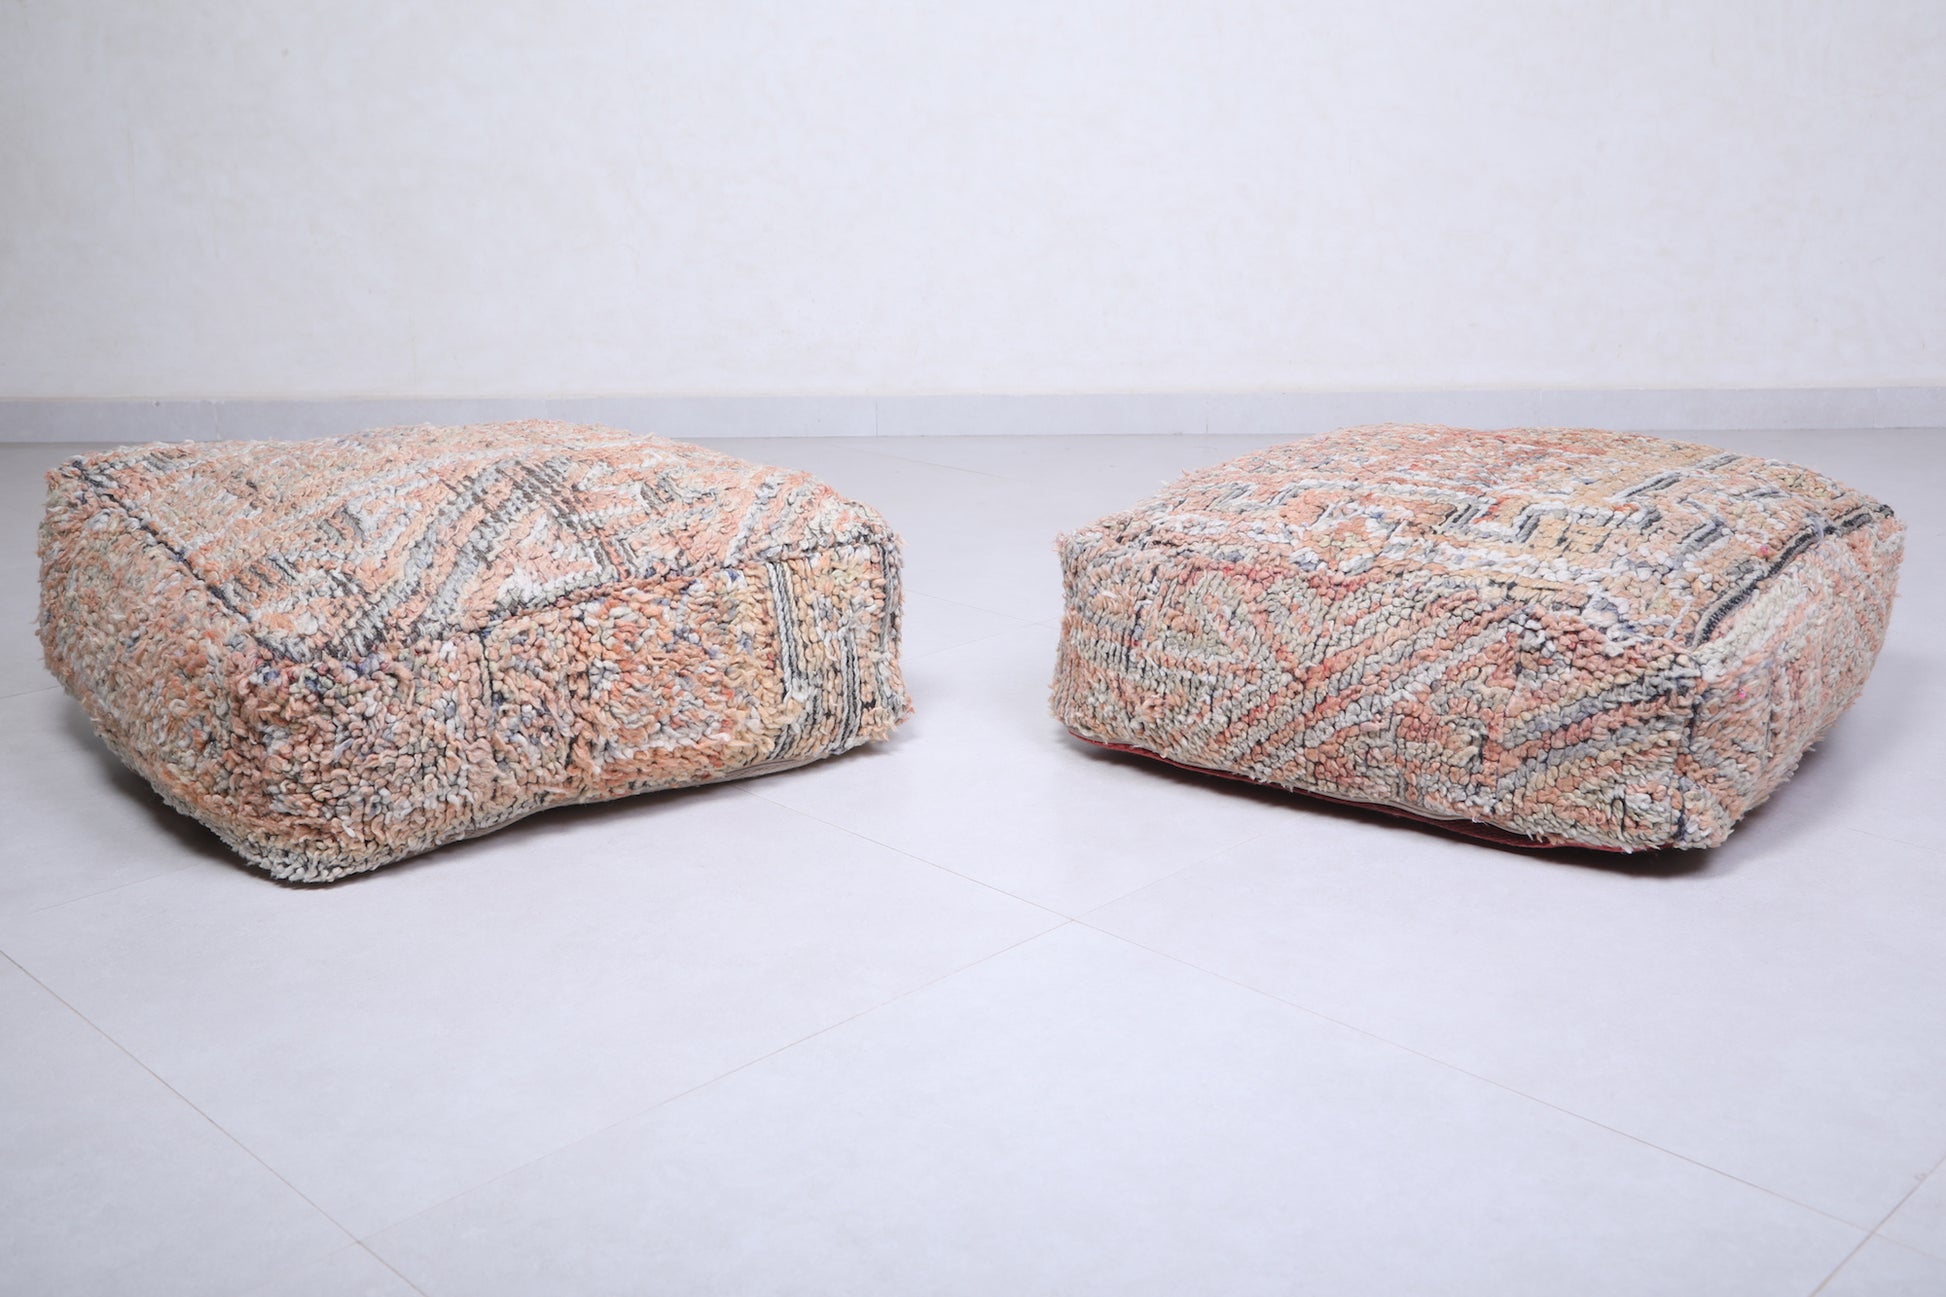 Two handmade ottoman berber rug pouf